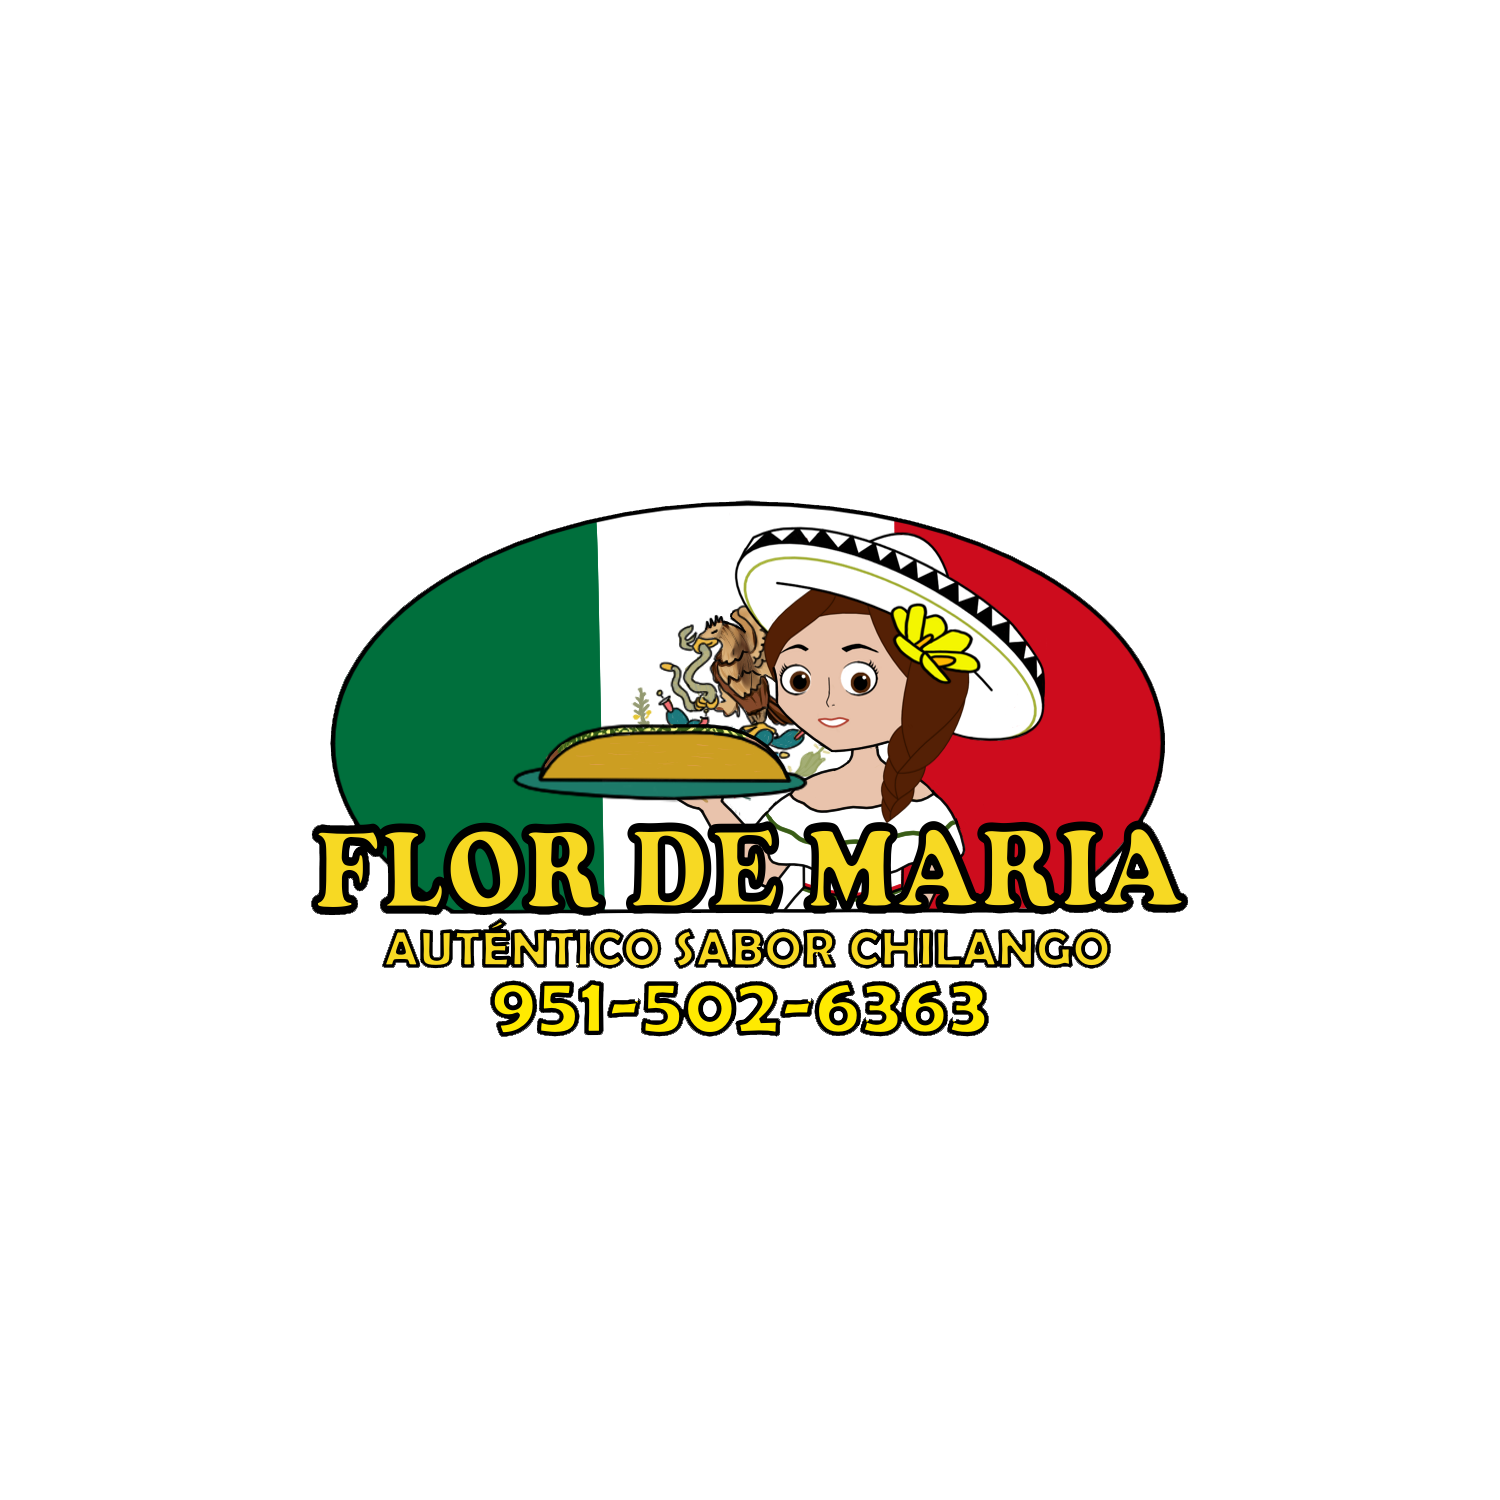 A photo of the Flor de Maria logo 